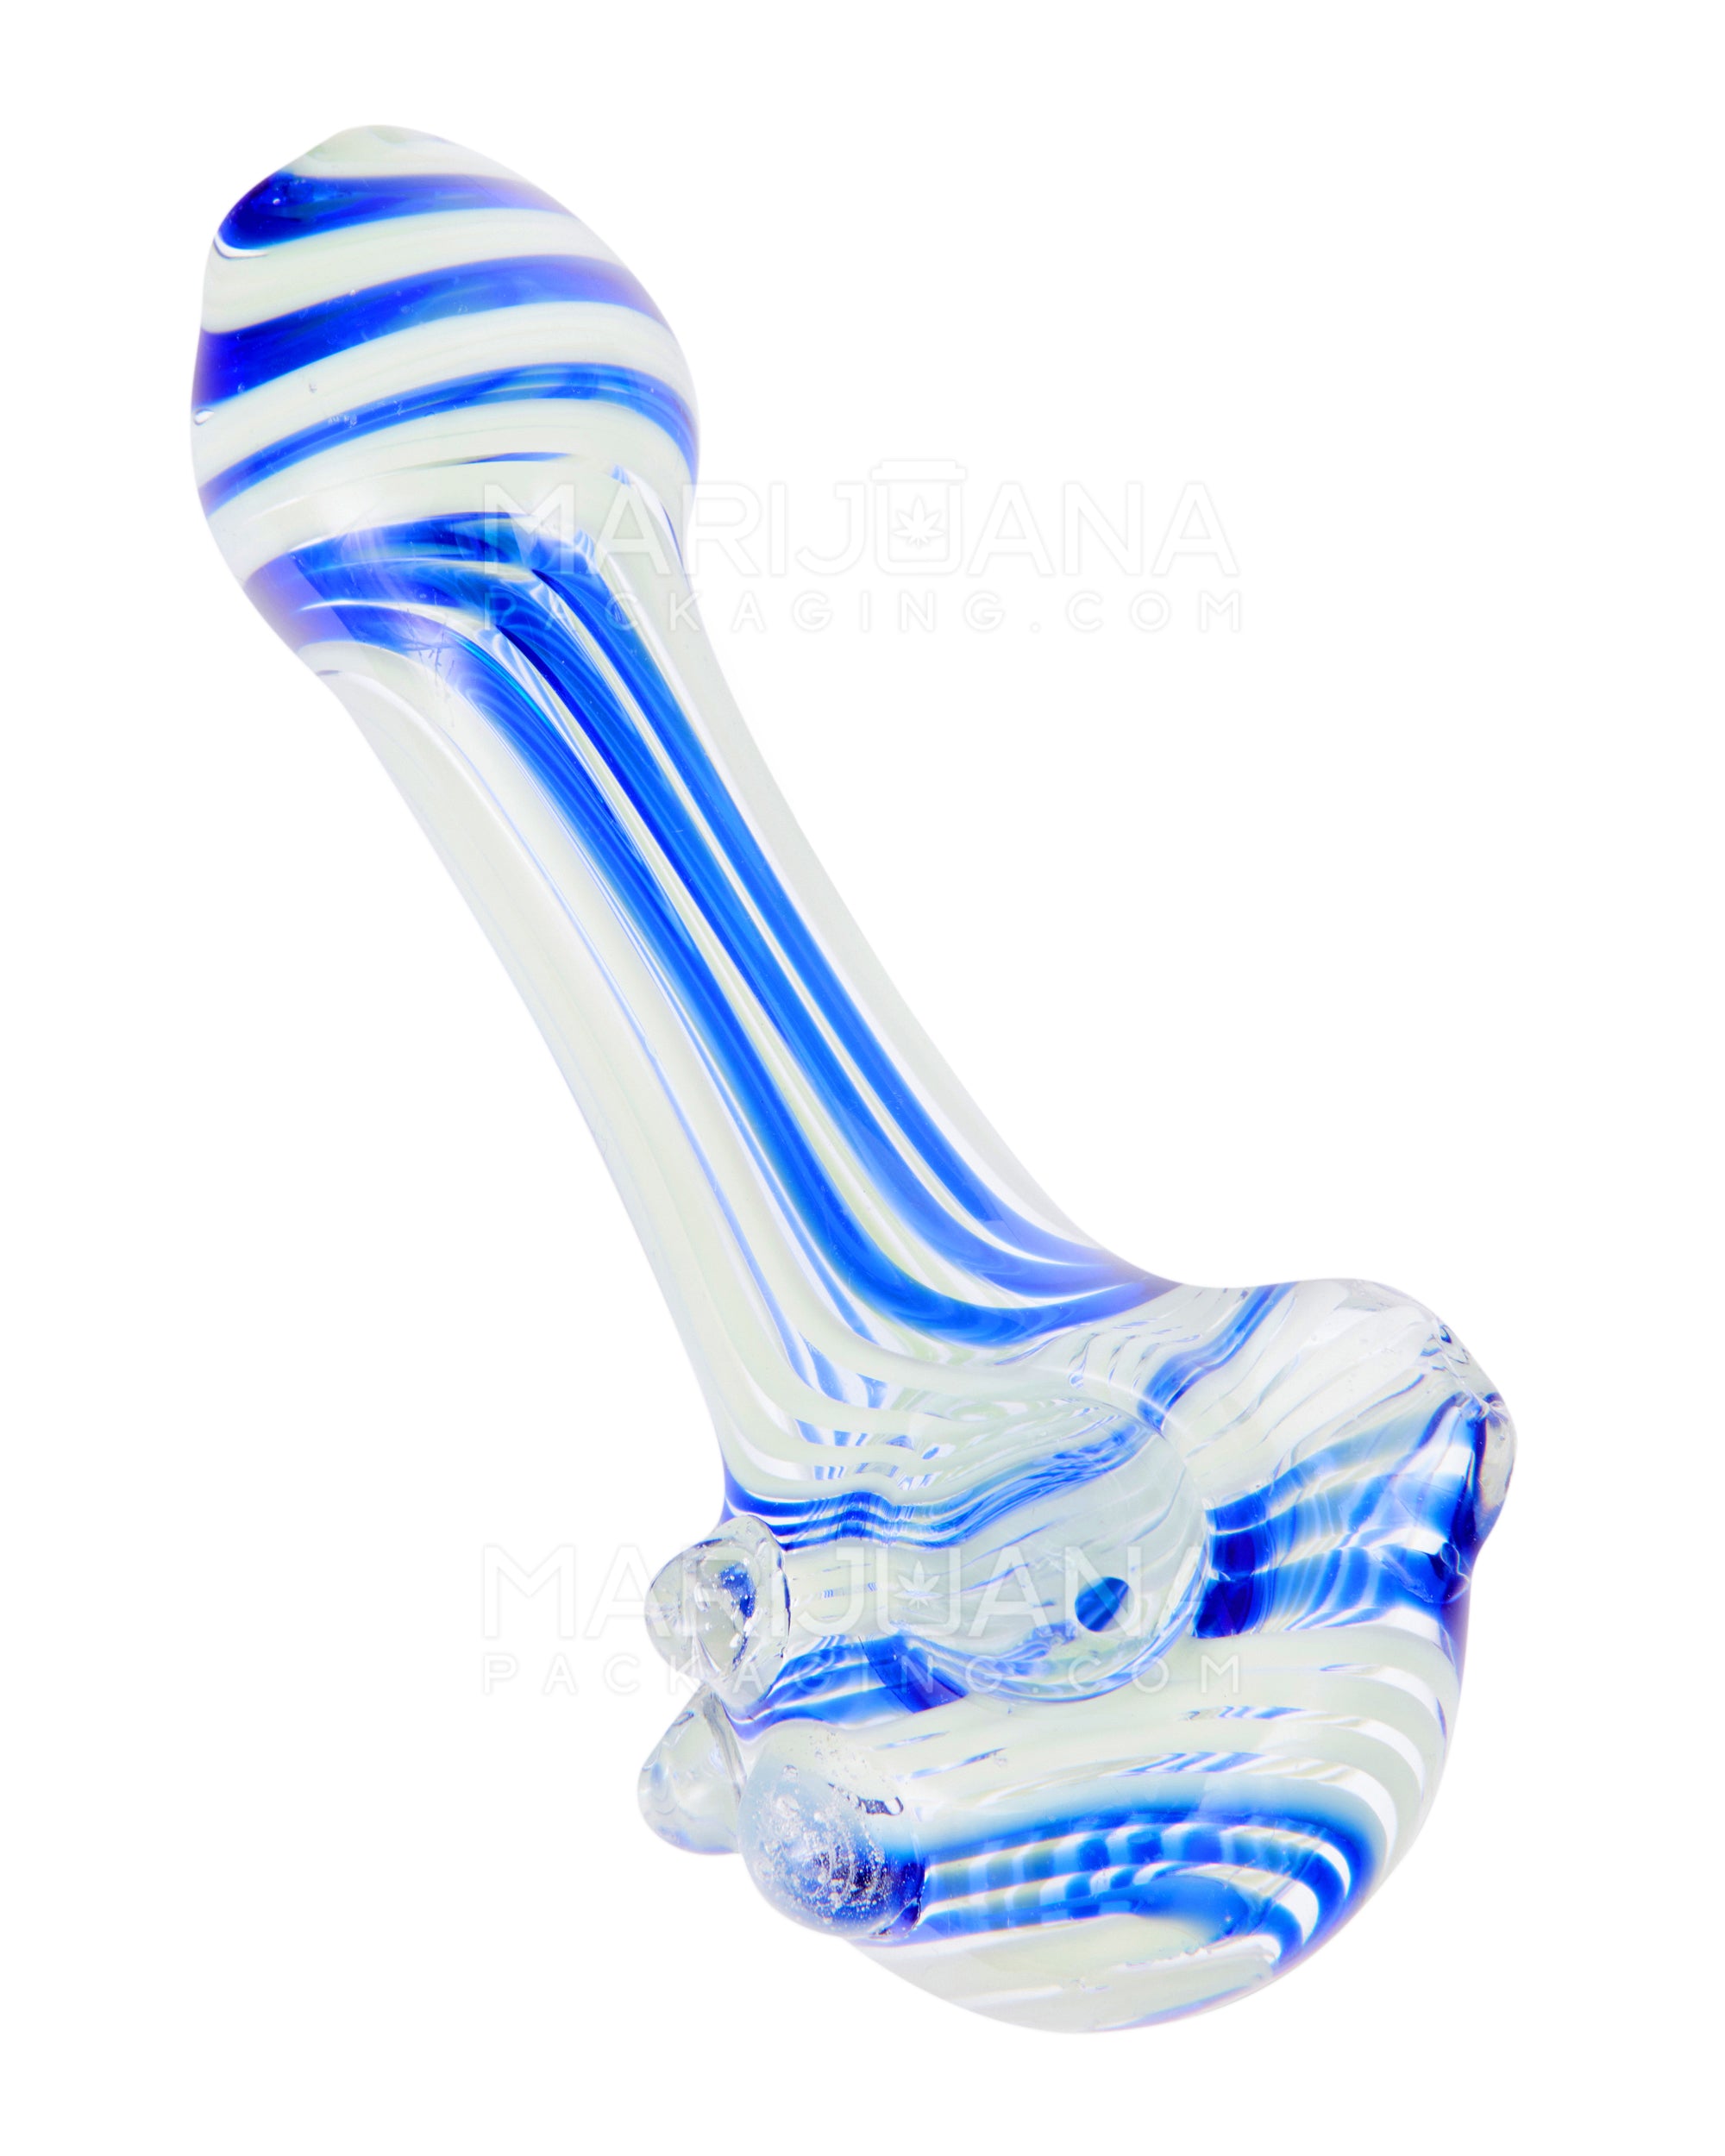 Swirl Spoon Hand Pipe w/ Triple Knockers | 5in Long - Glass - Assorted - 6